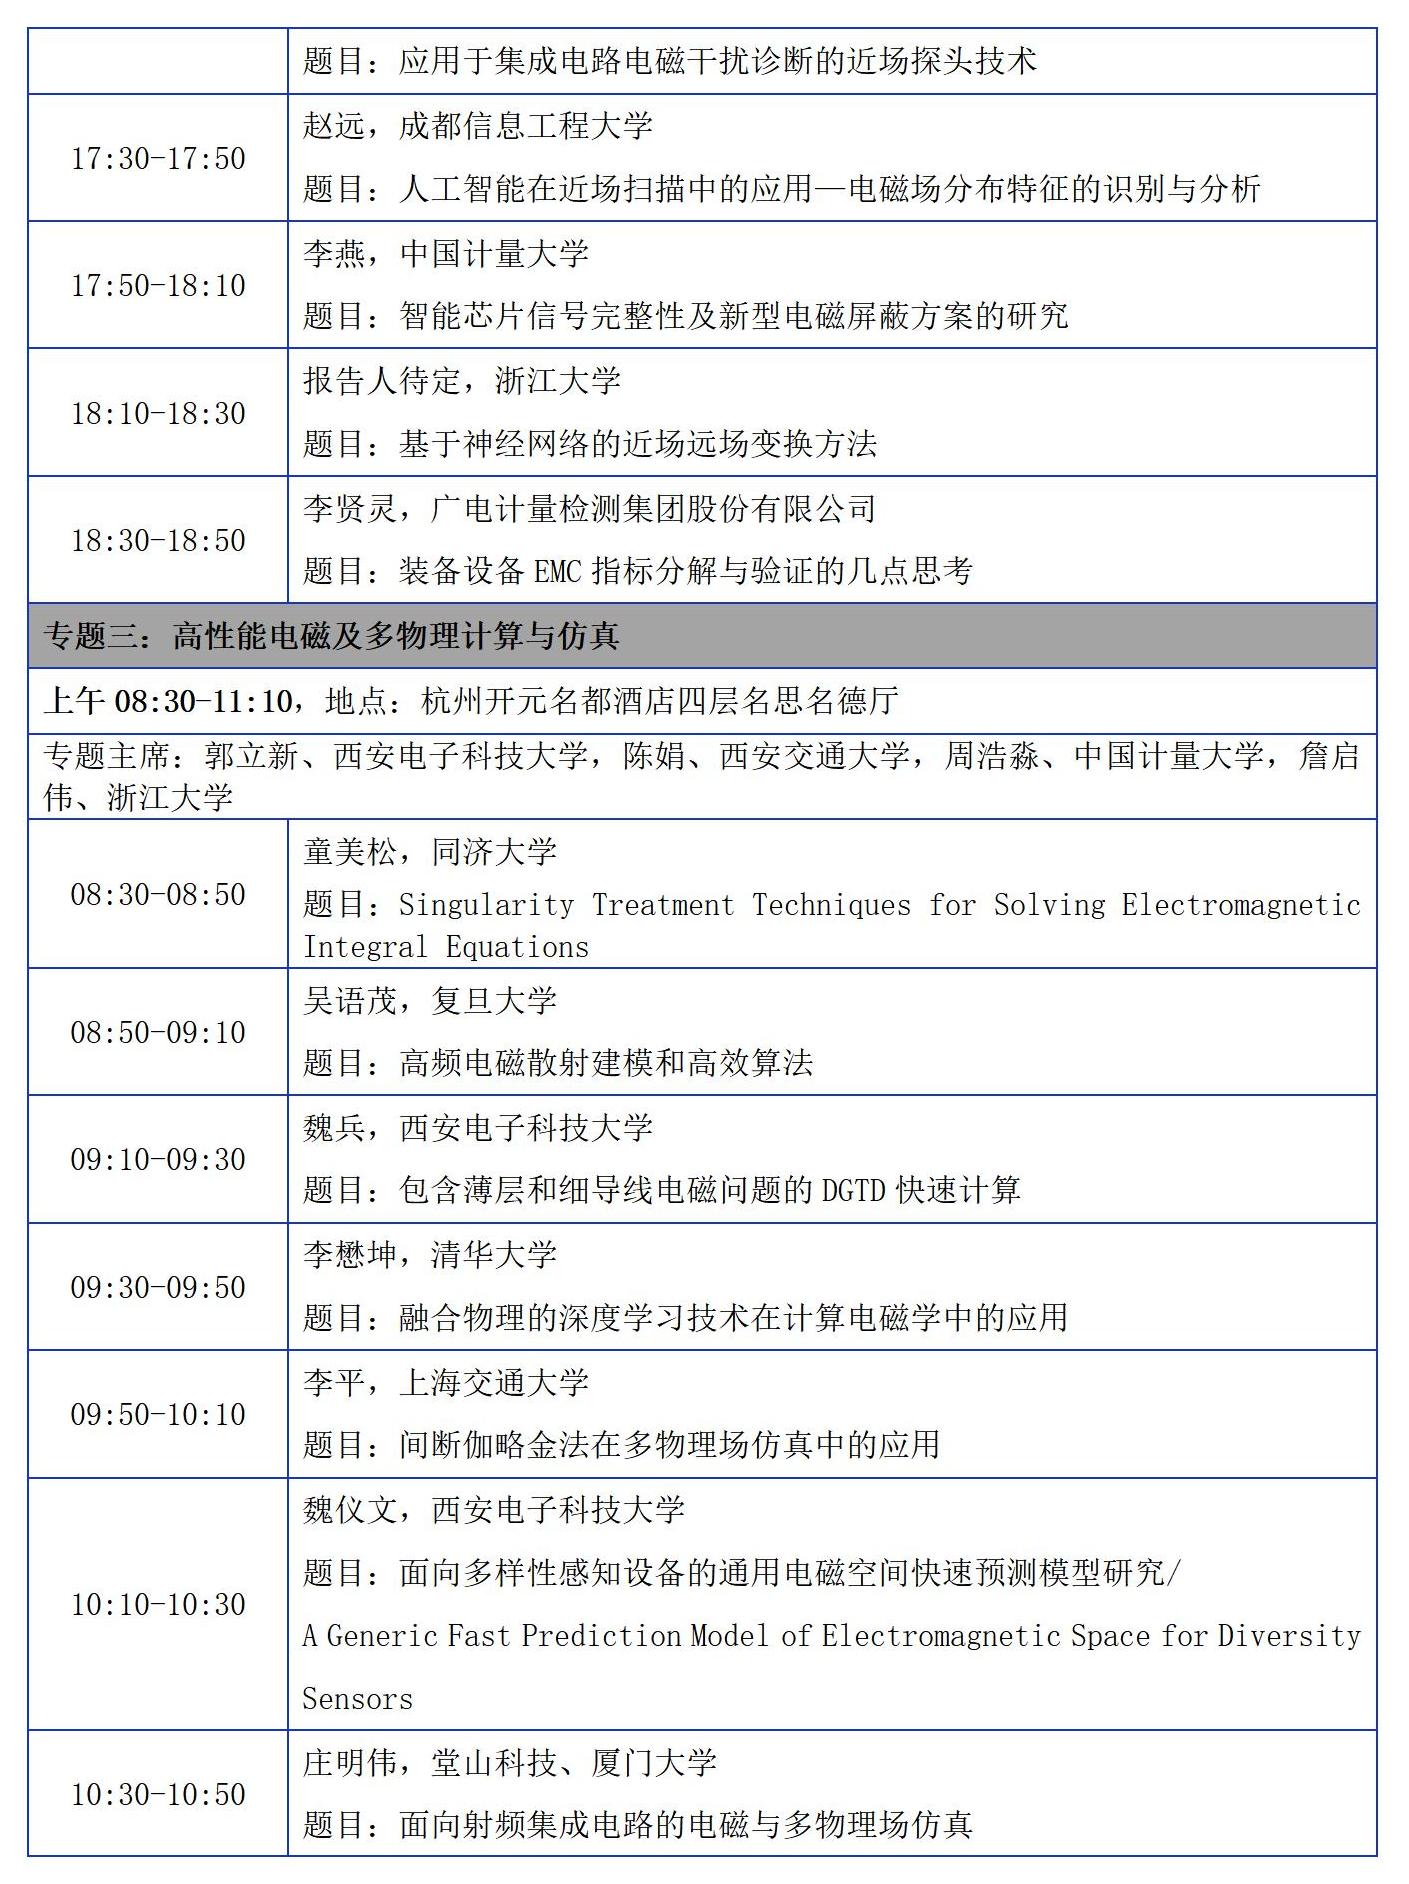 【日程版】2023年中国电磁兼容及电磁环境效应技术及产业创新大会会议征文通知0921_18(1)